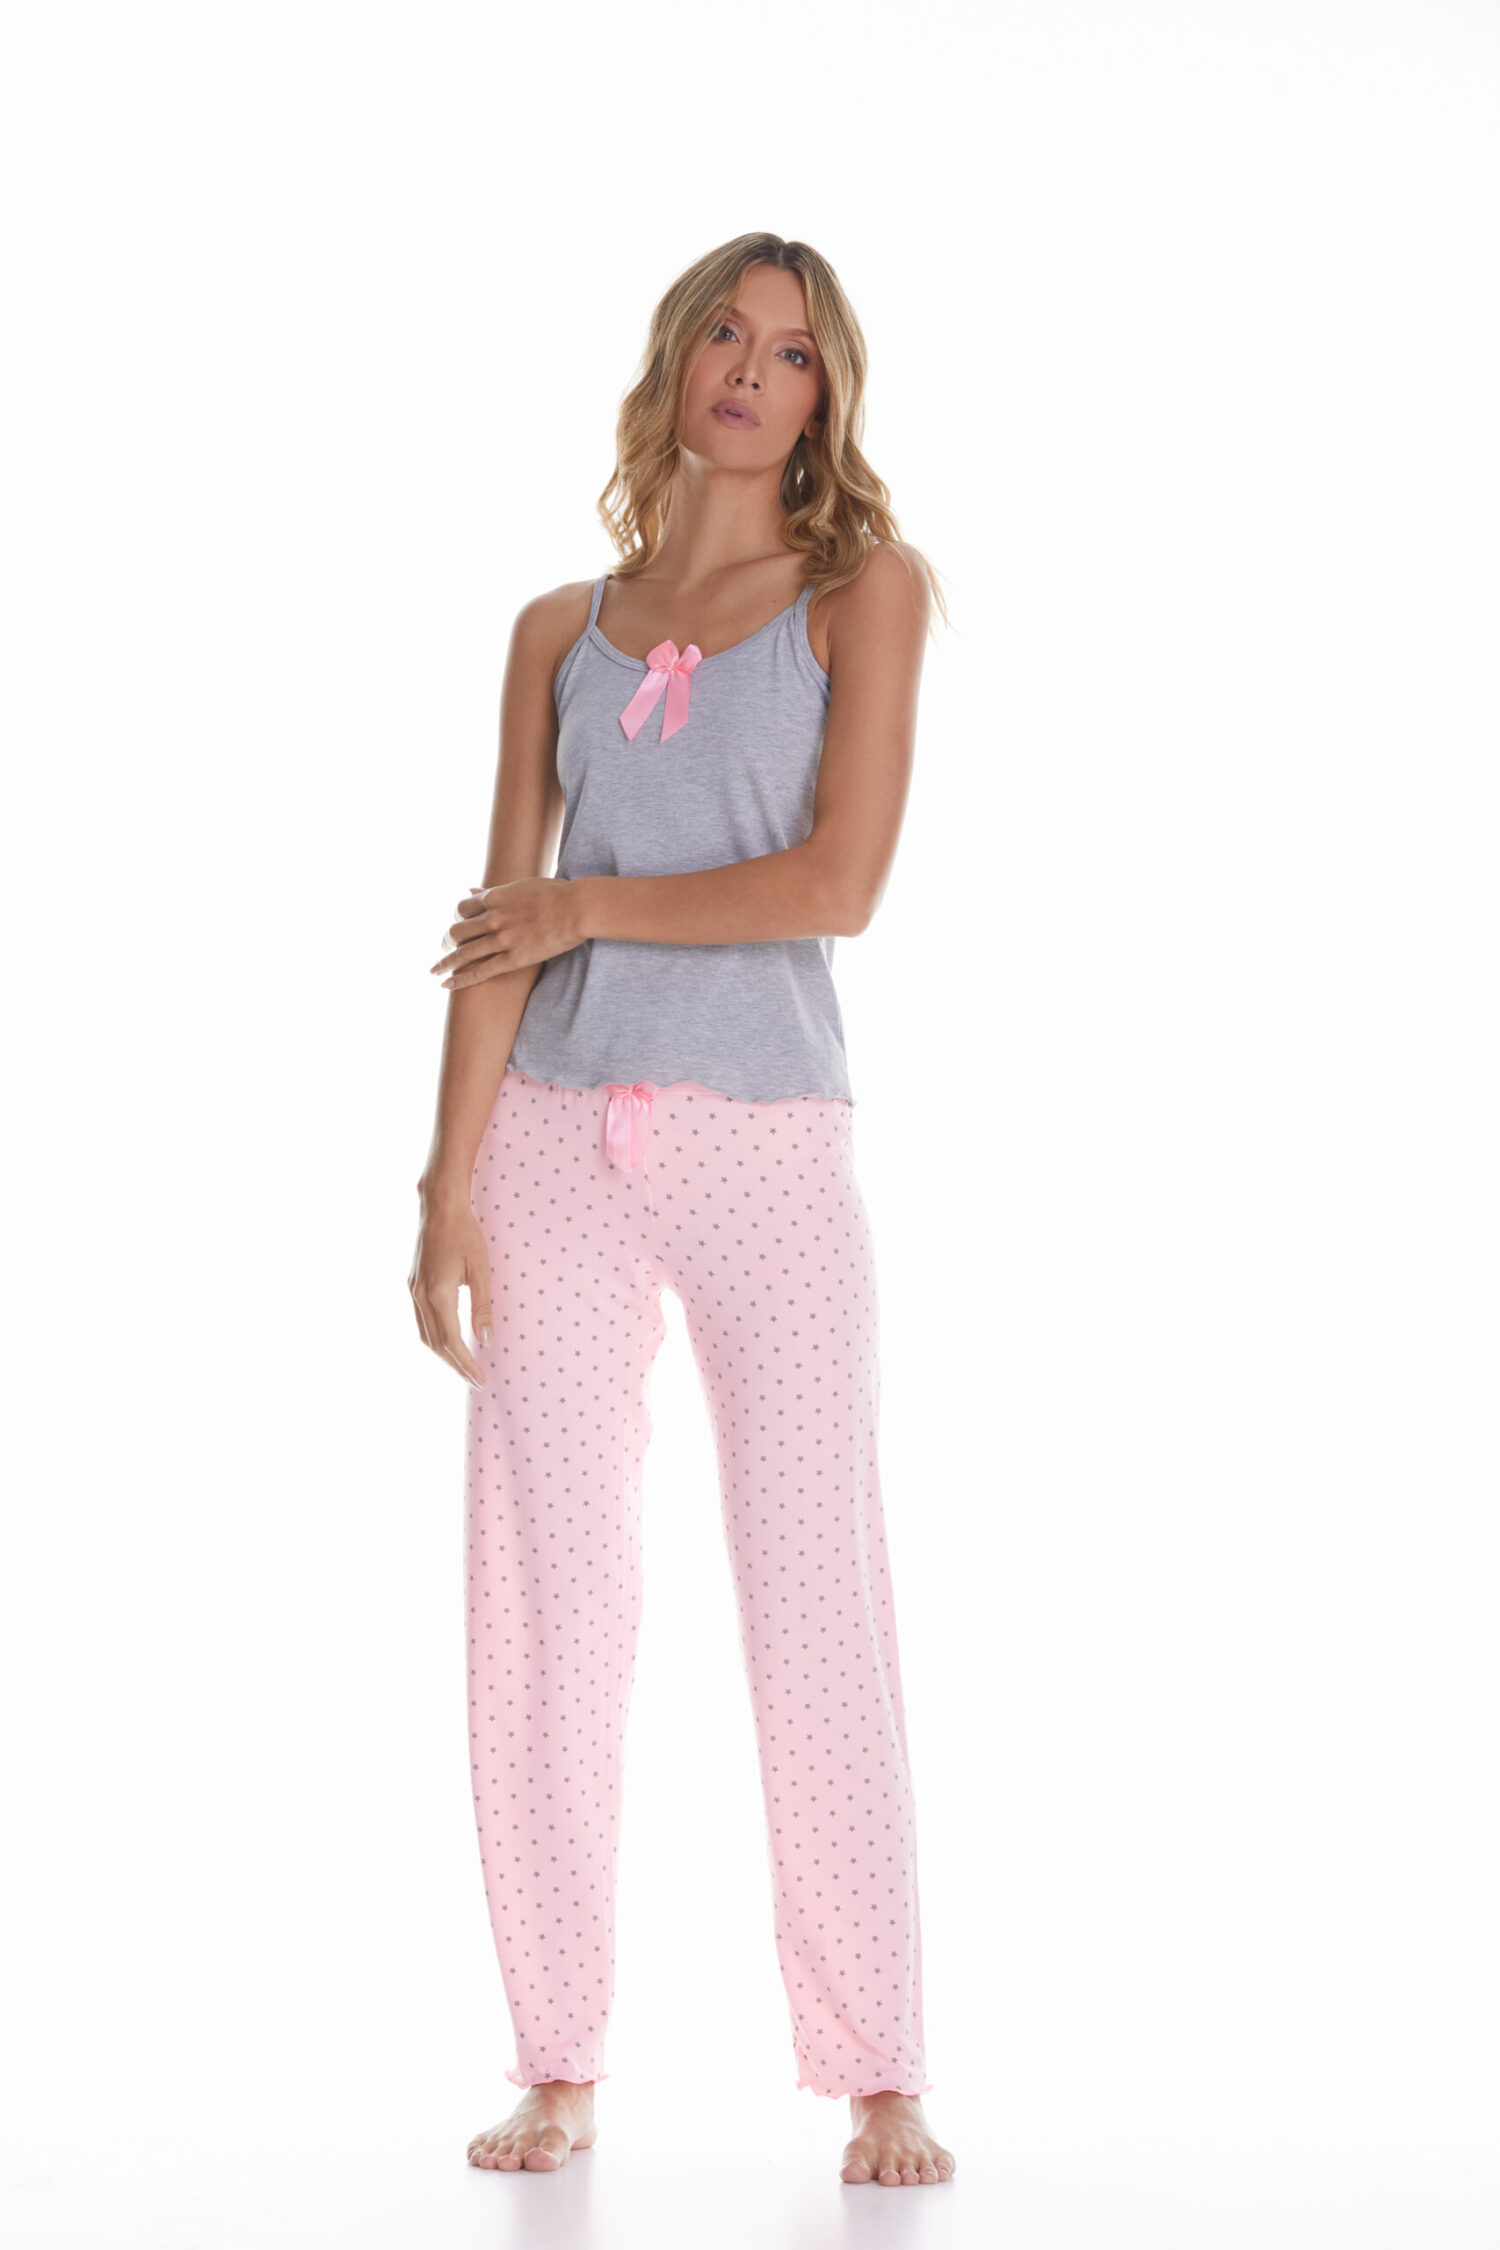 Imagen del producto: Conjunto pantalón rosado estrellas gris camisa gris